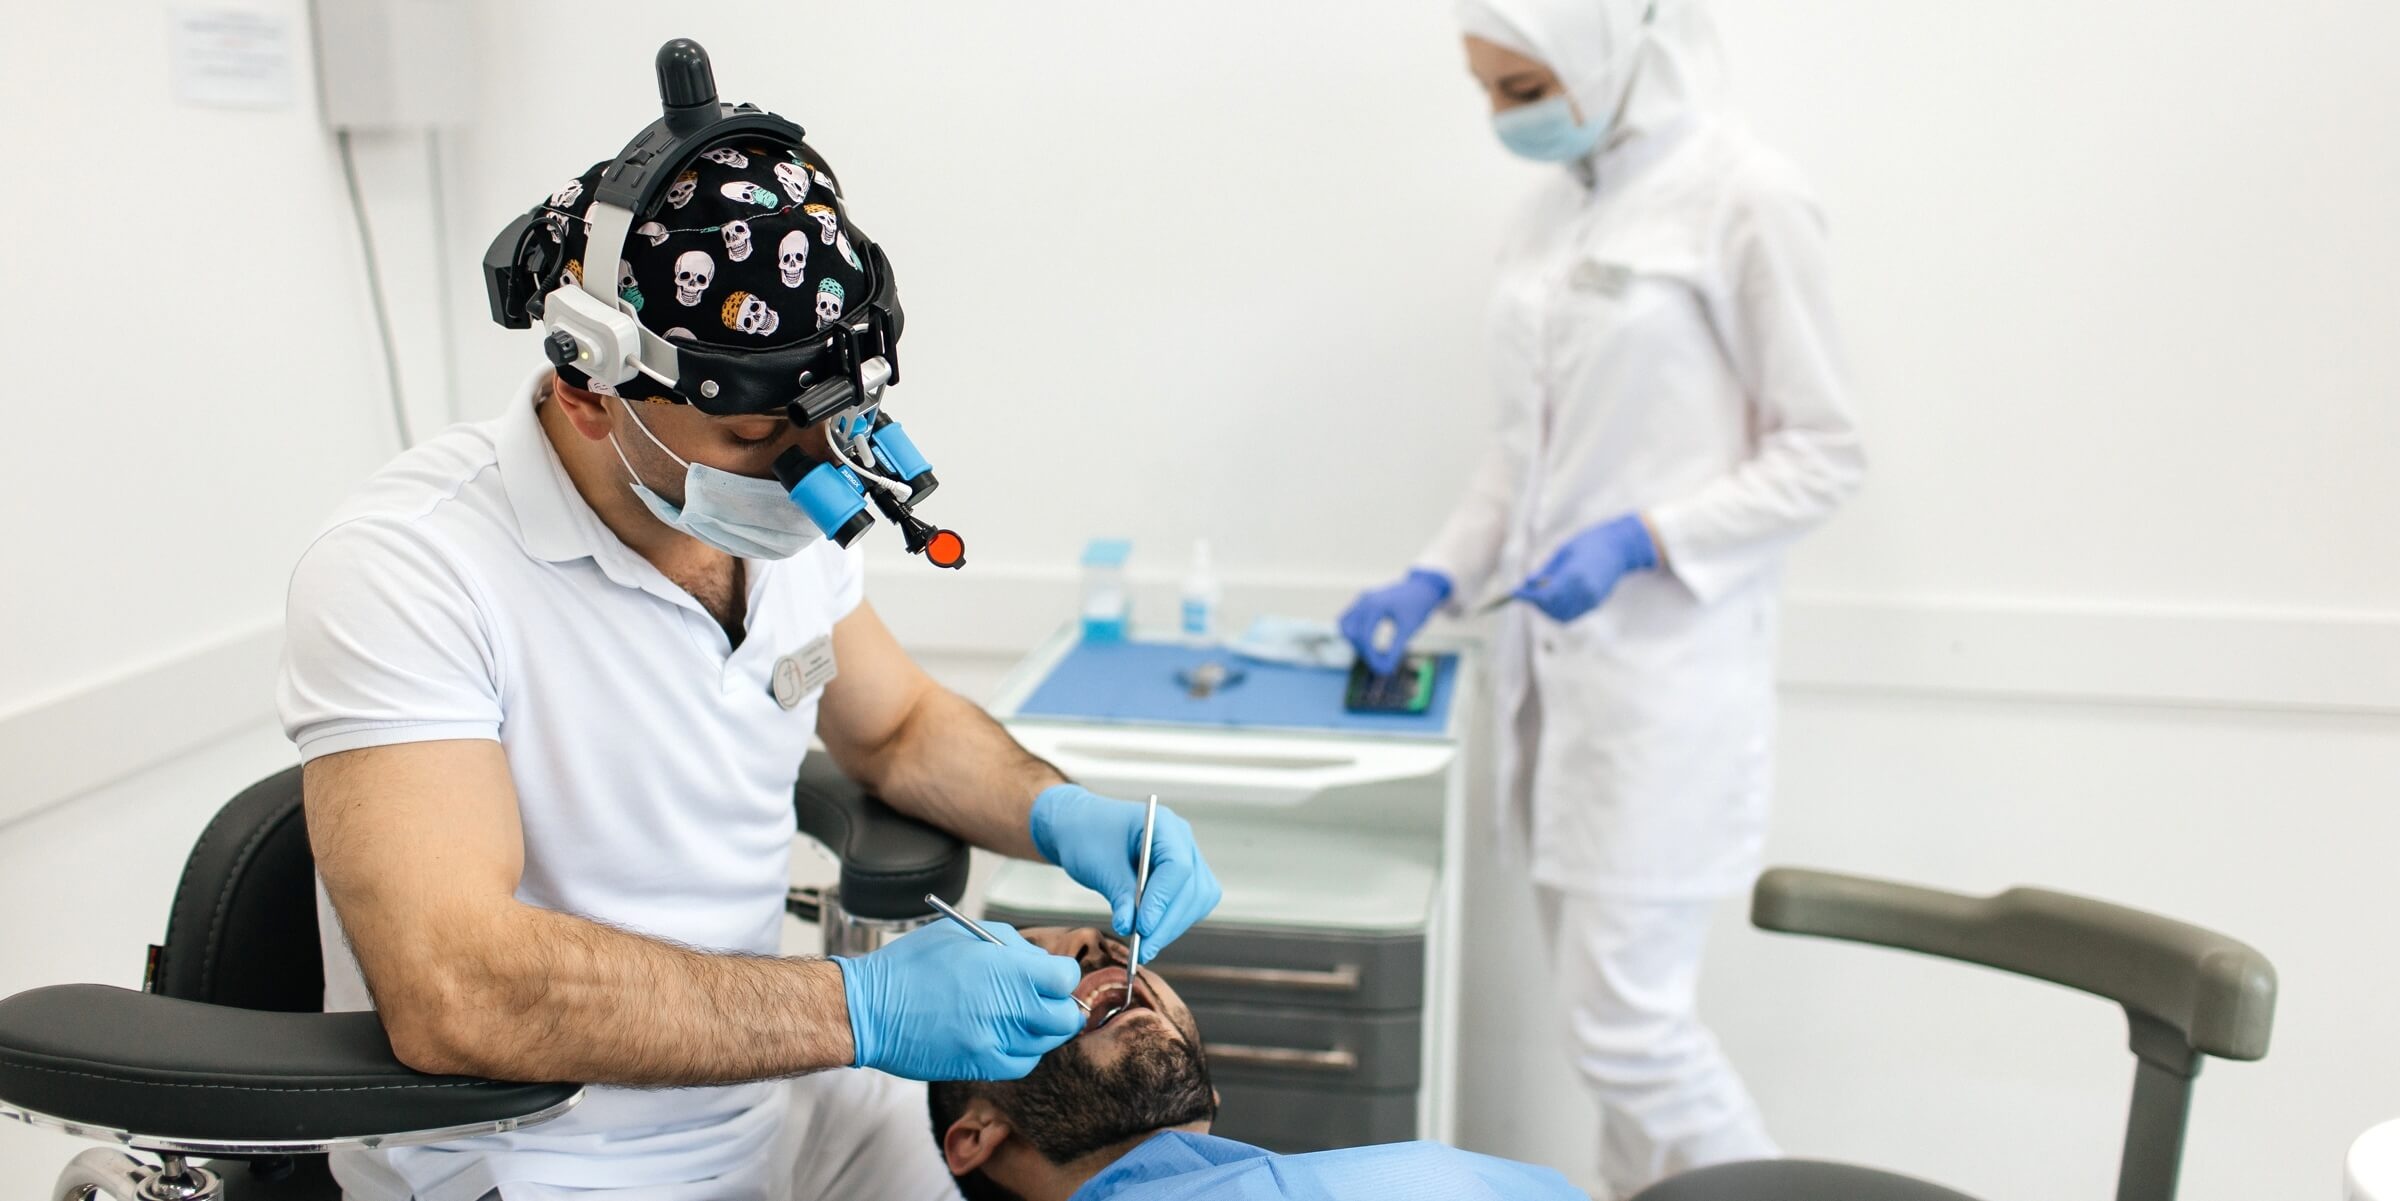 Стоматолог ортопед осматривает полость рта пациента перед началом ортопедического лечения с применением технологий цифровой стоматологии